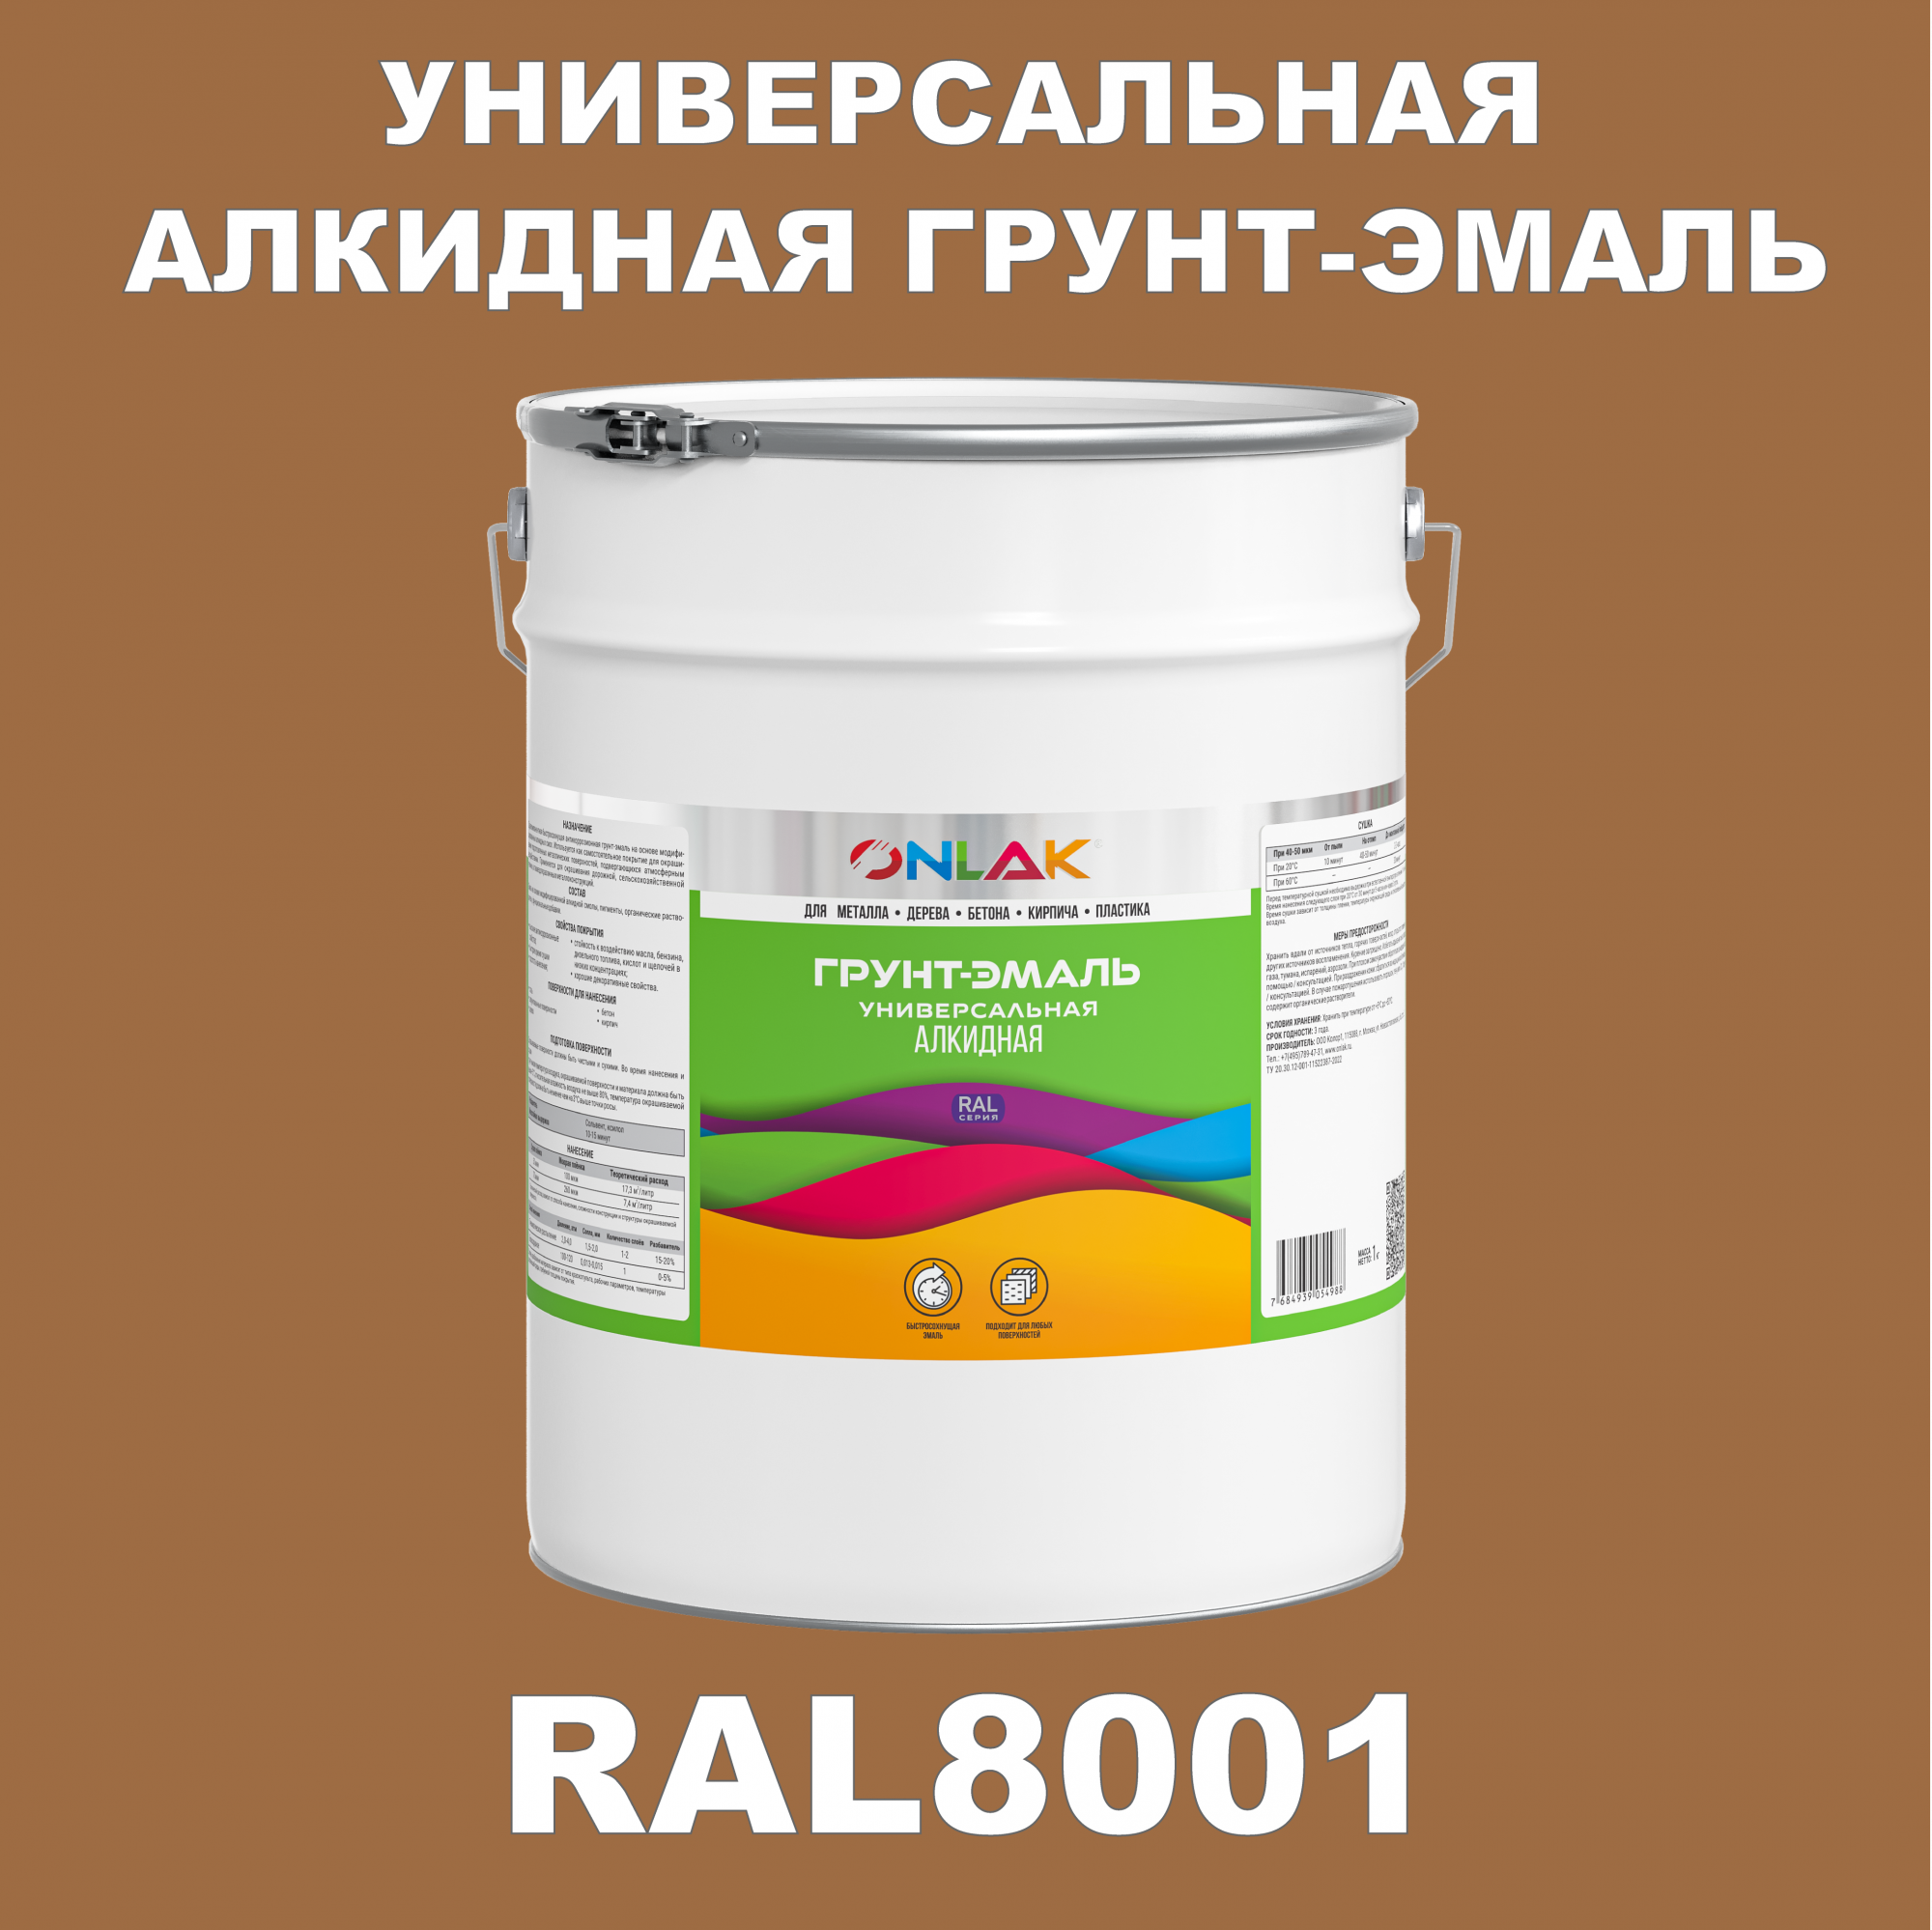 Грунт-эмаль ONLAK 1К RAL8001 антикоррозионная алкидная по металлу по ржавчине 20 кг грунт эмаль skladno по ржавчине алкидная желтая 1 8 кг